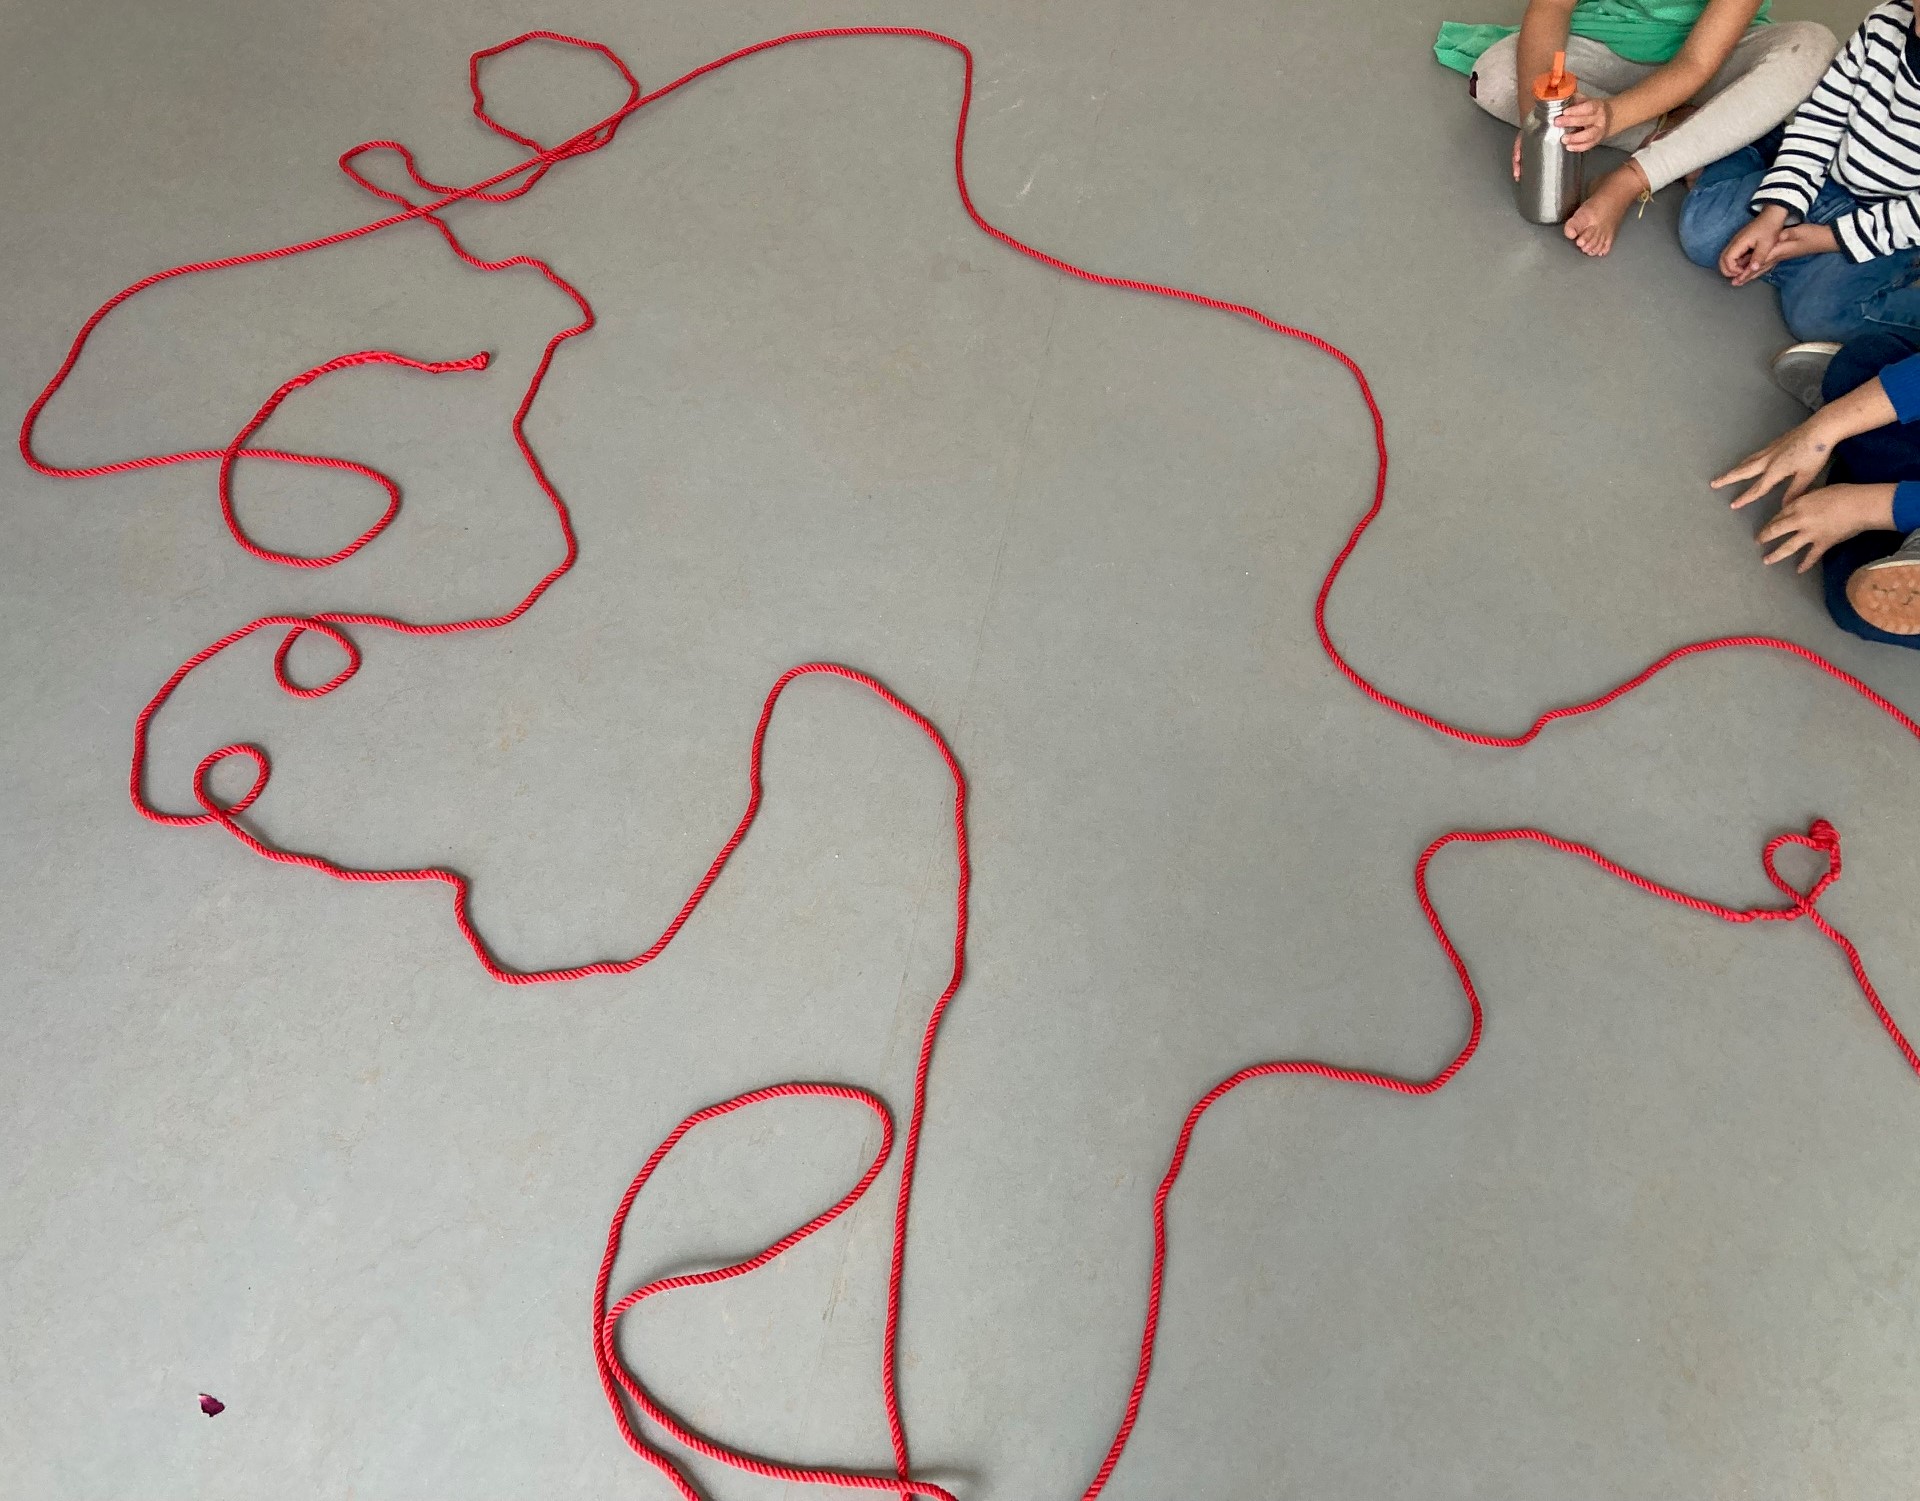 auf einem grauen Boden liegt ein großes rotes Seil, das durch seine vielen Rundungen,Schlingen und Kurven wie ein kleines Monsterwesen aussieht, am Rand sieht man Hände und knie von Kindern die darum sitzen